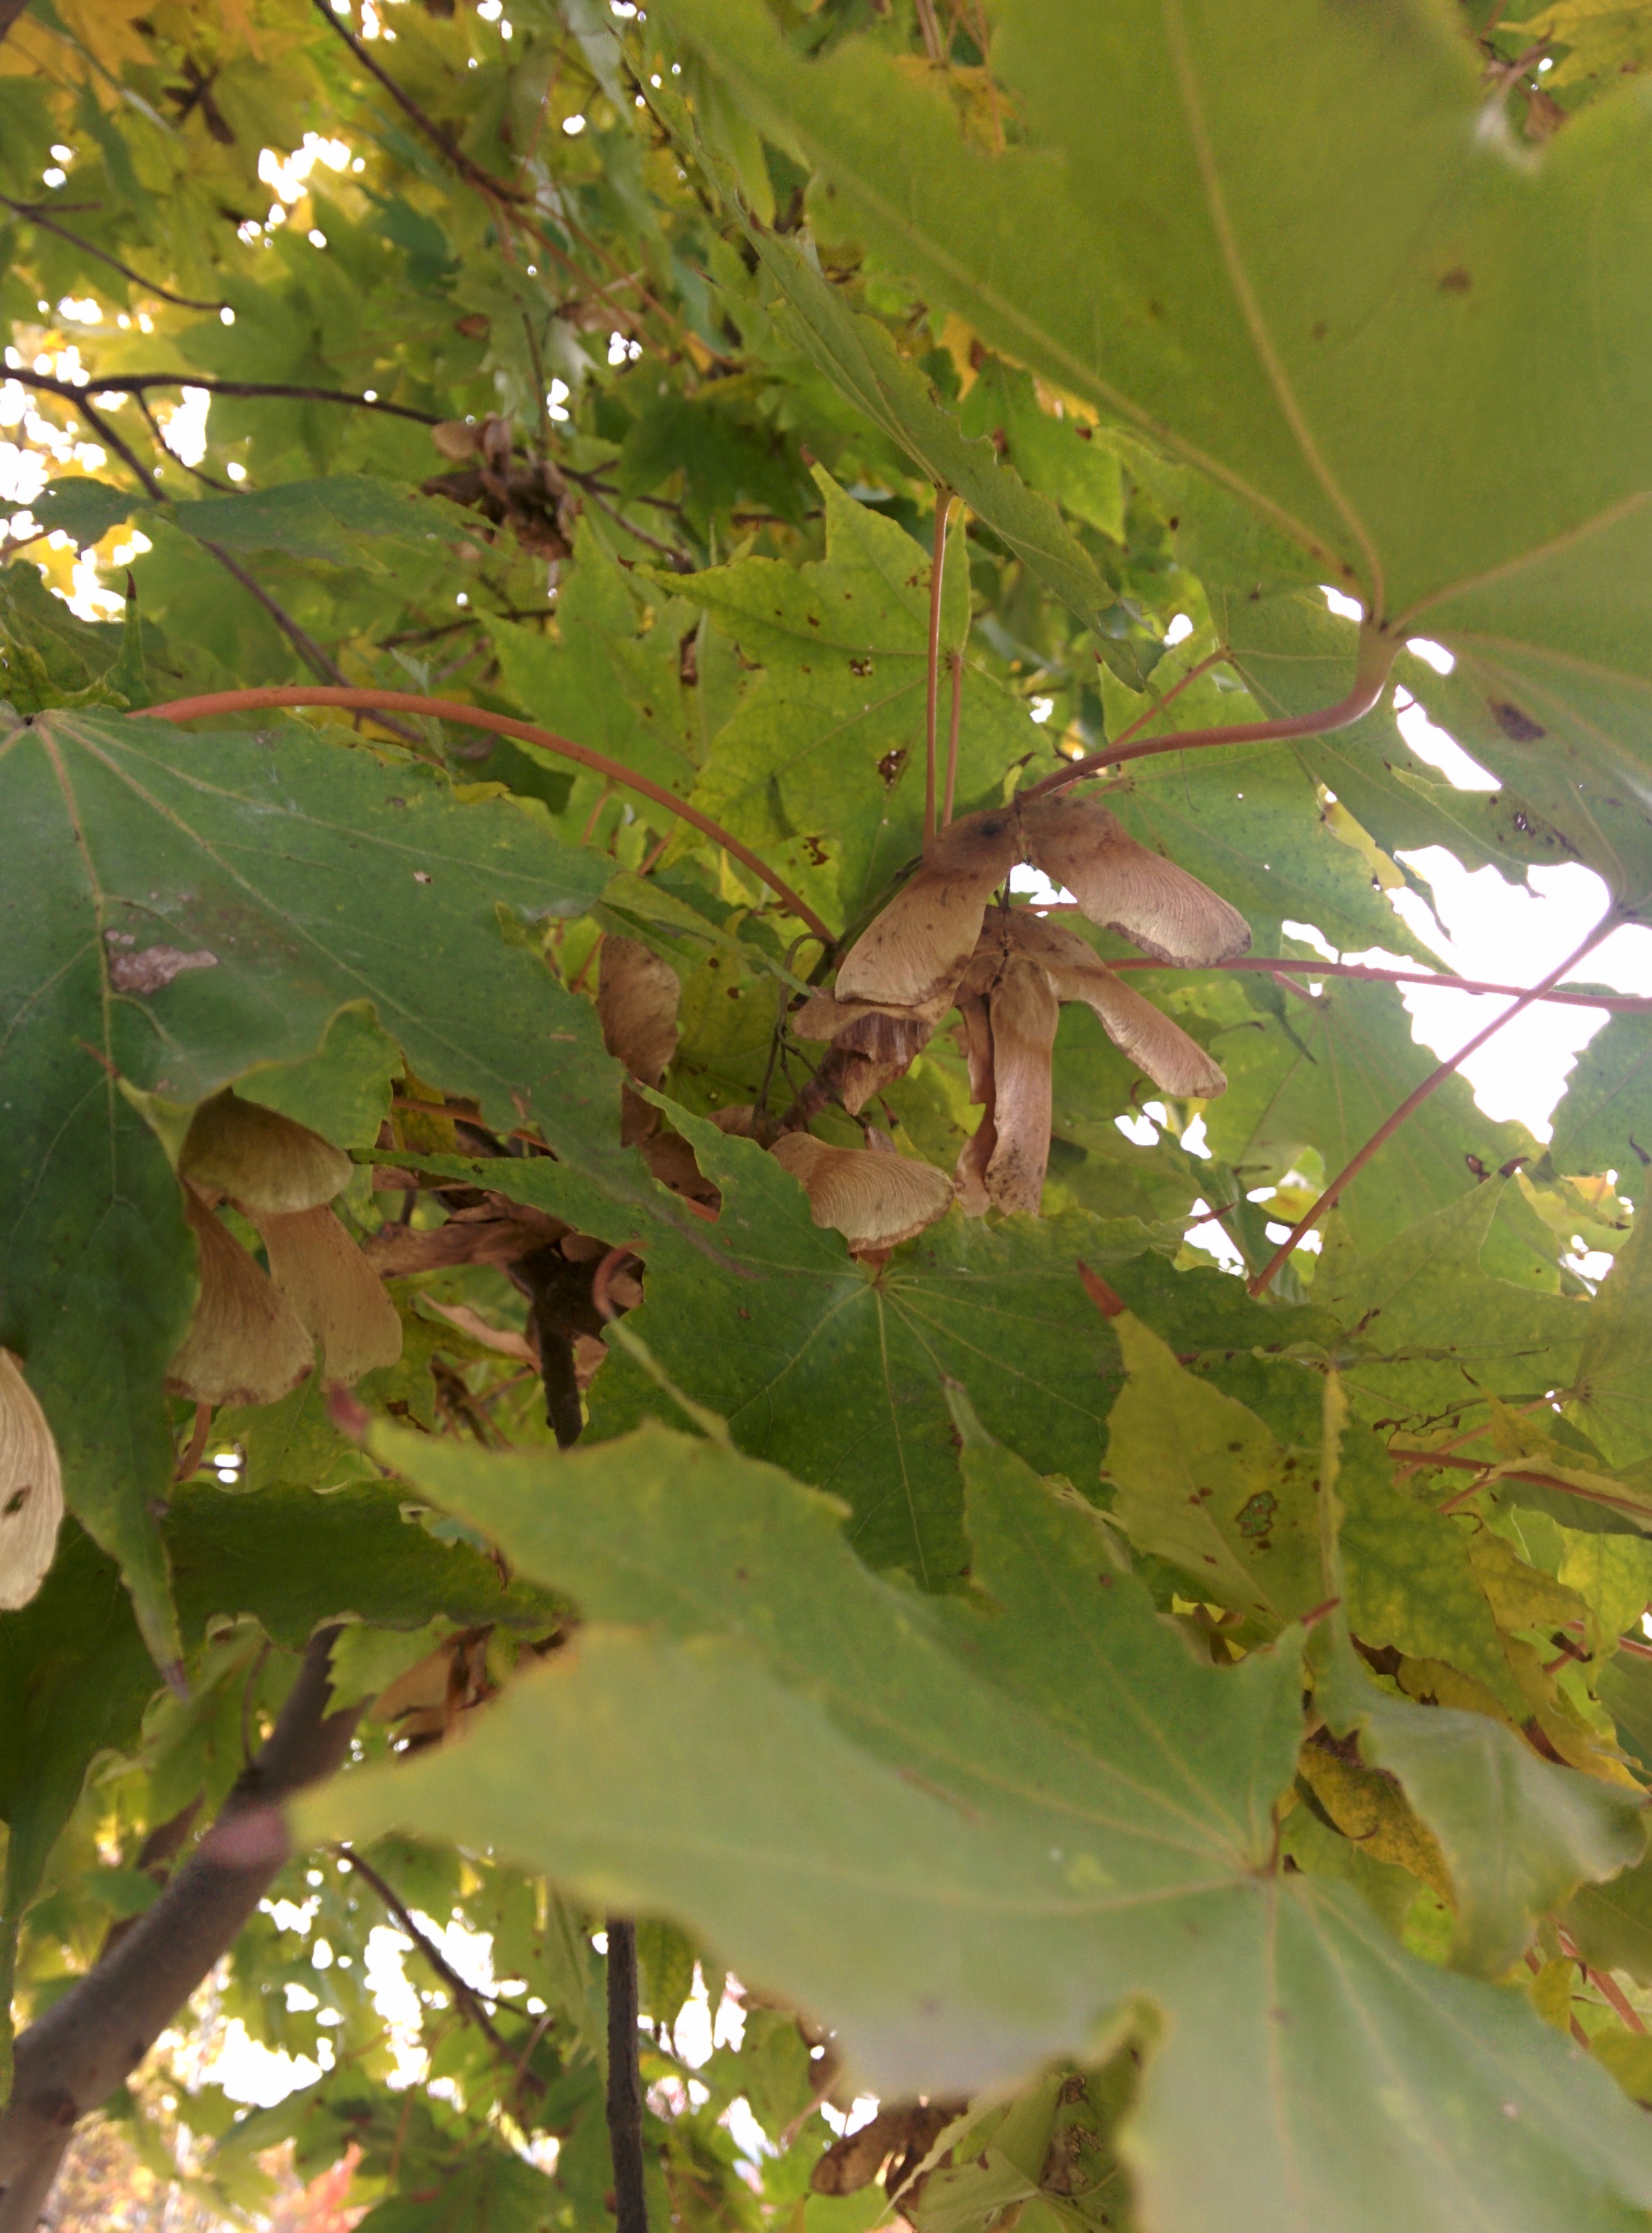 IMG_20151106_150144.jpg 넓적한 잎의 우산고로쇠나무 날개열매